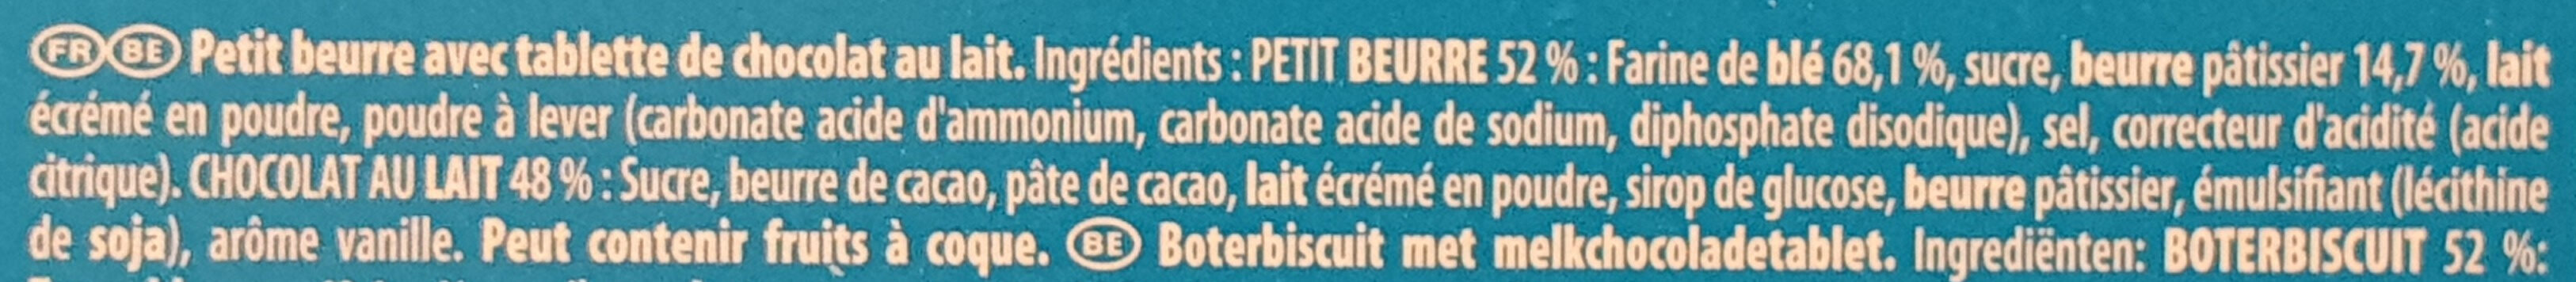 Véritable Petit écolier Pocket Chocolat au Lait - Ingredients - fr